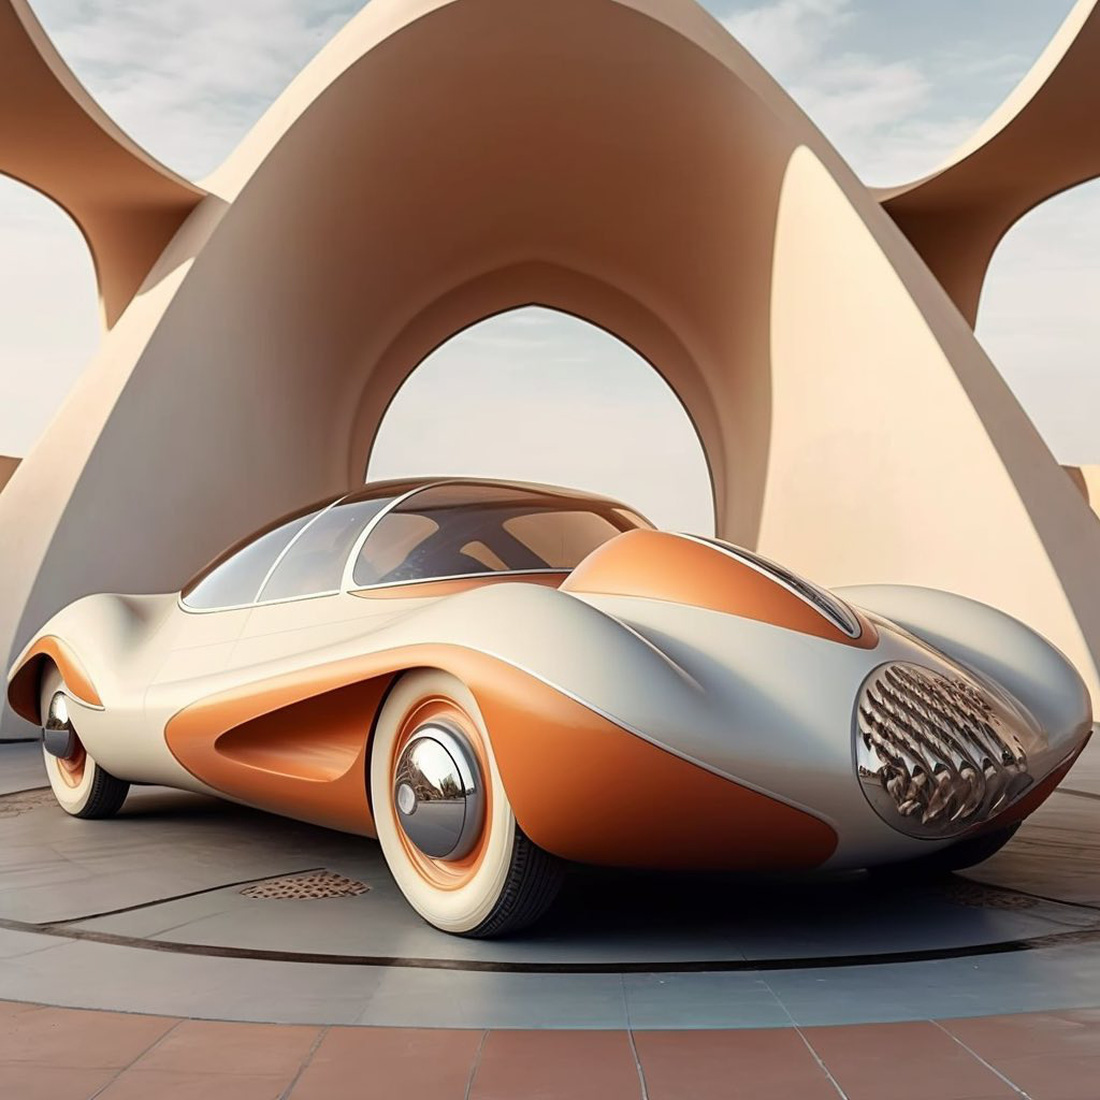 Chùm ảnh trí tuệ nhân tạo thiết kế ô tô mô phỏng các công trình kiến trúc độc đáo - Ảnh 8.